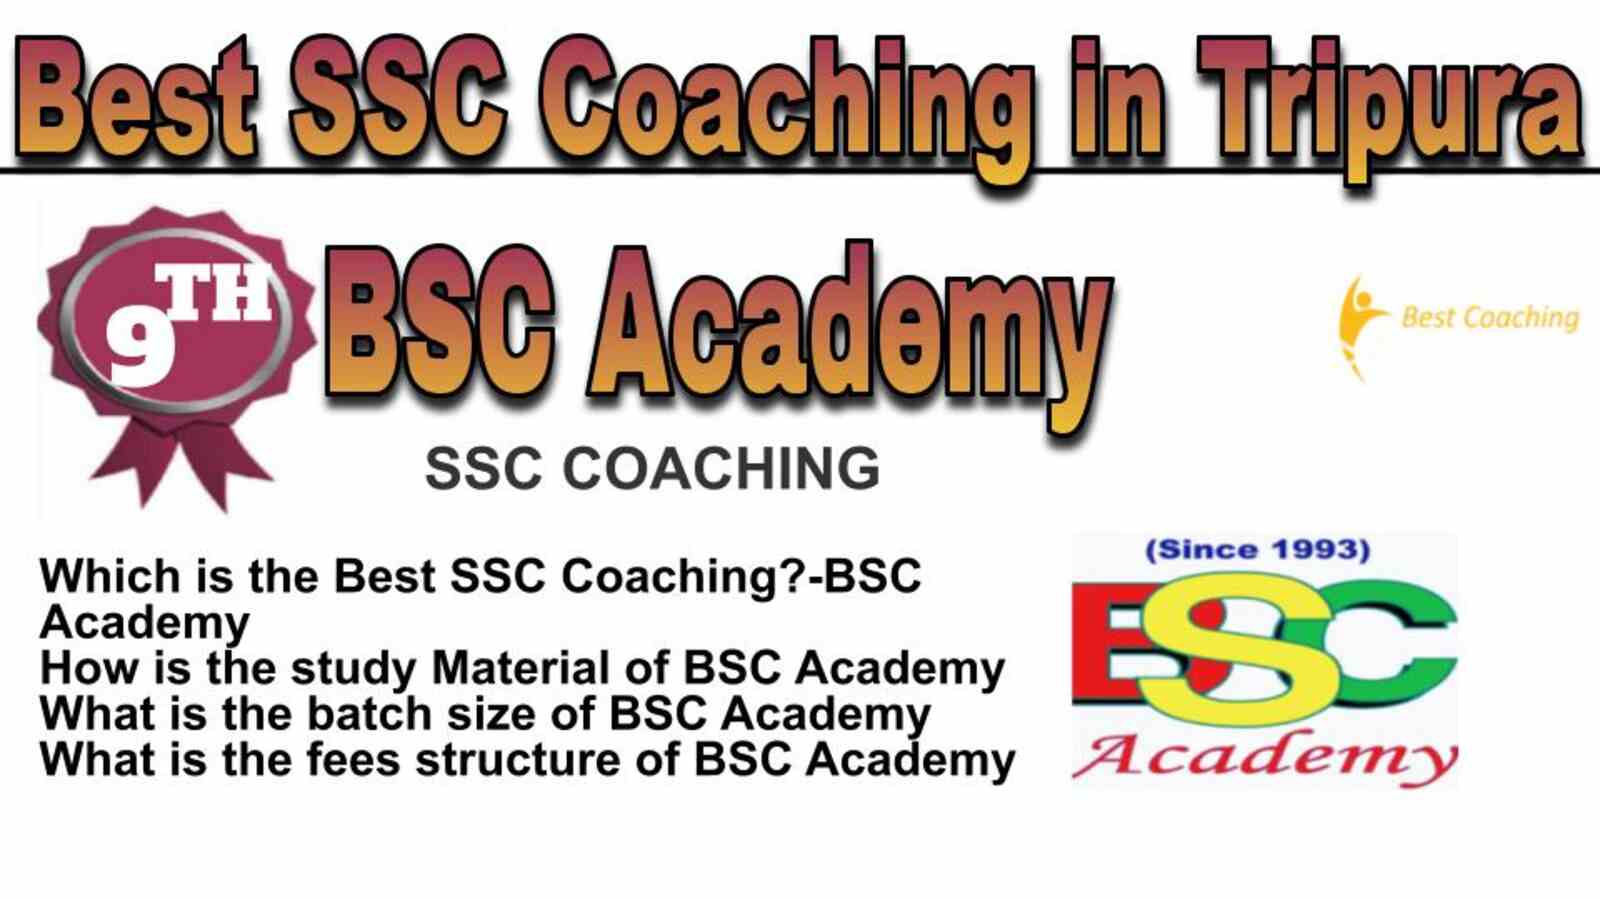 Rank 9 best SSC Coaching in Tripura